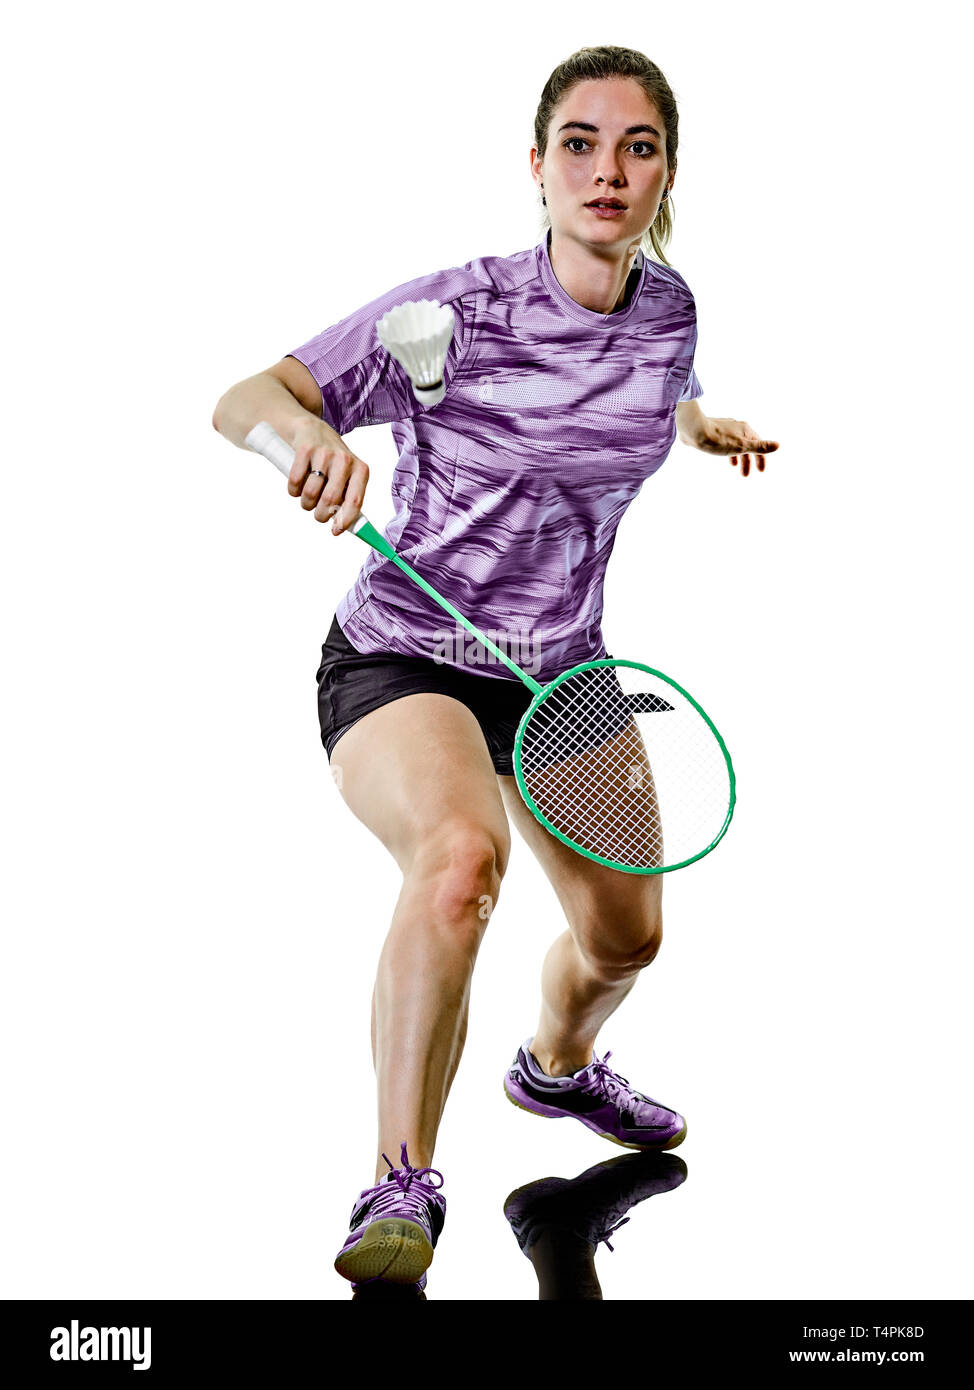 eine kaukasische junger Teenager Mädchen Frau spielt Badminton-Spieler isoliert auf weißem Hintergrund Stockfoto